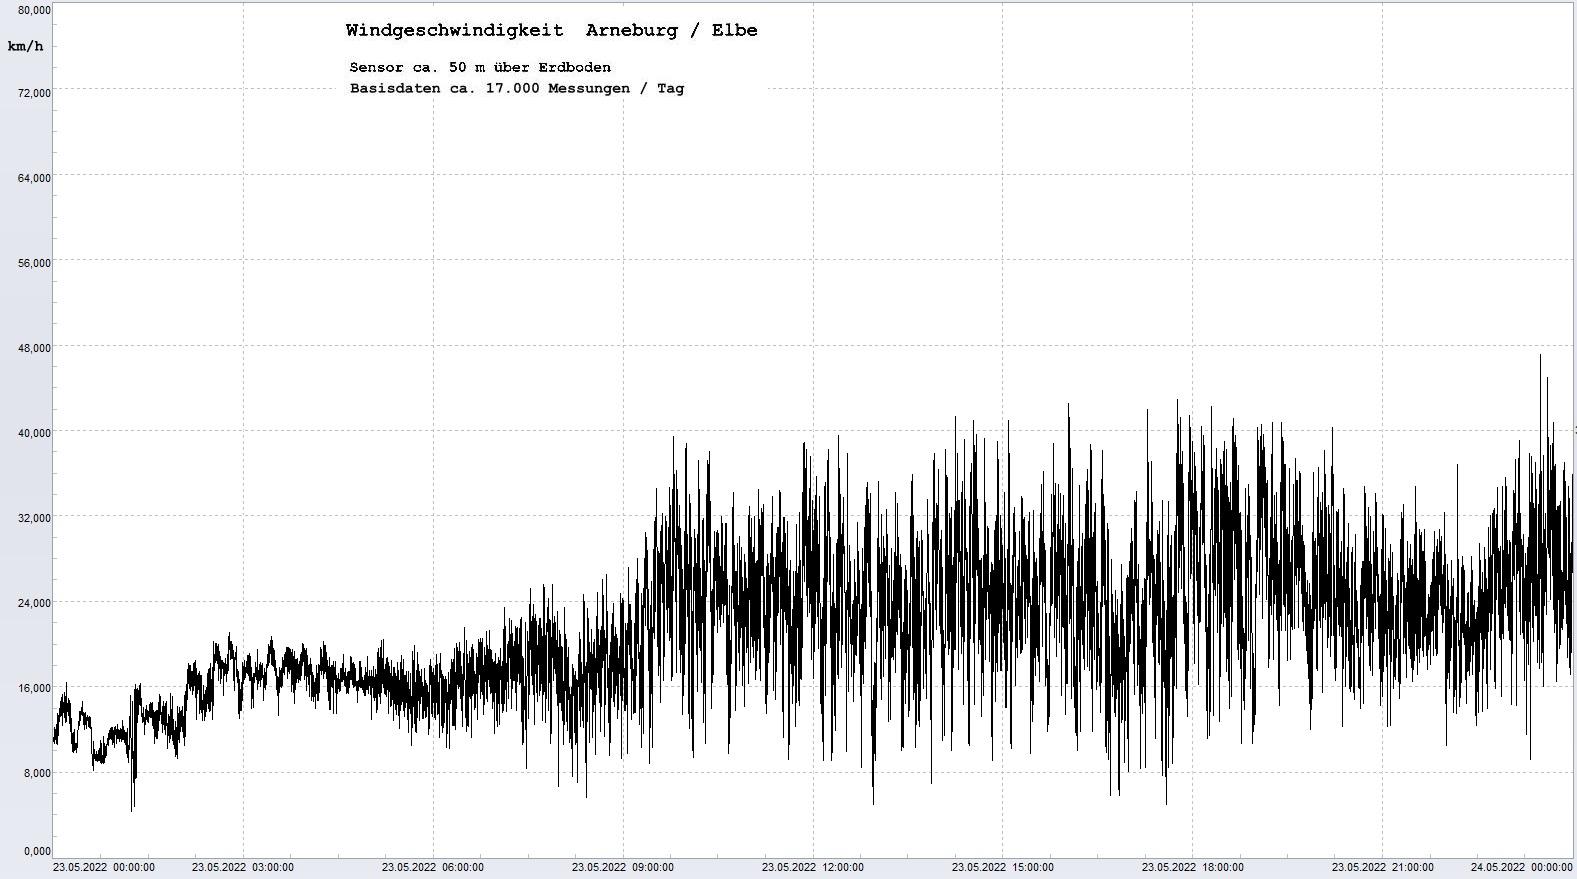 Arneburg Tages-Diagramm Winddaten, 23.05.2022
  Diagramm, Sensor auf Gebäude, ca. 50 m über Erdboden, Basis: 5s-Aufzeichnung